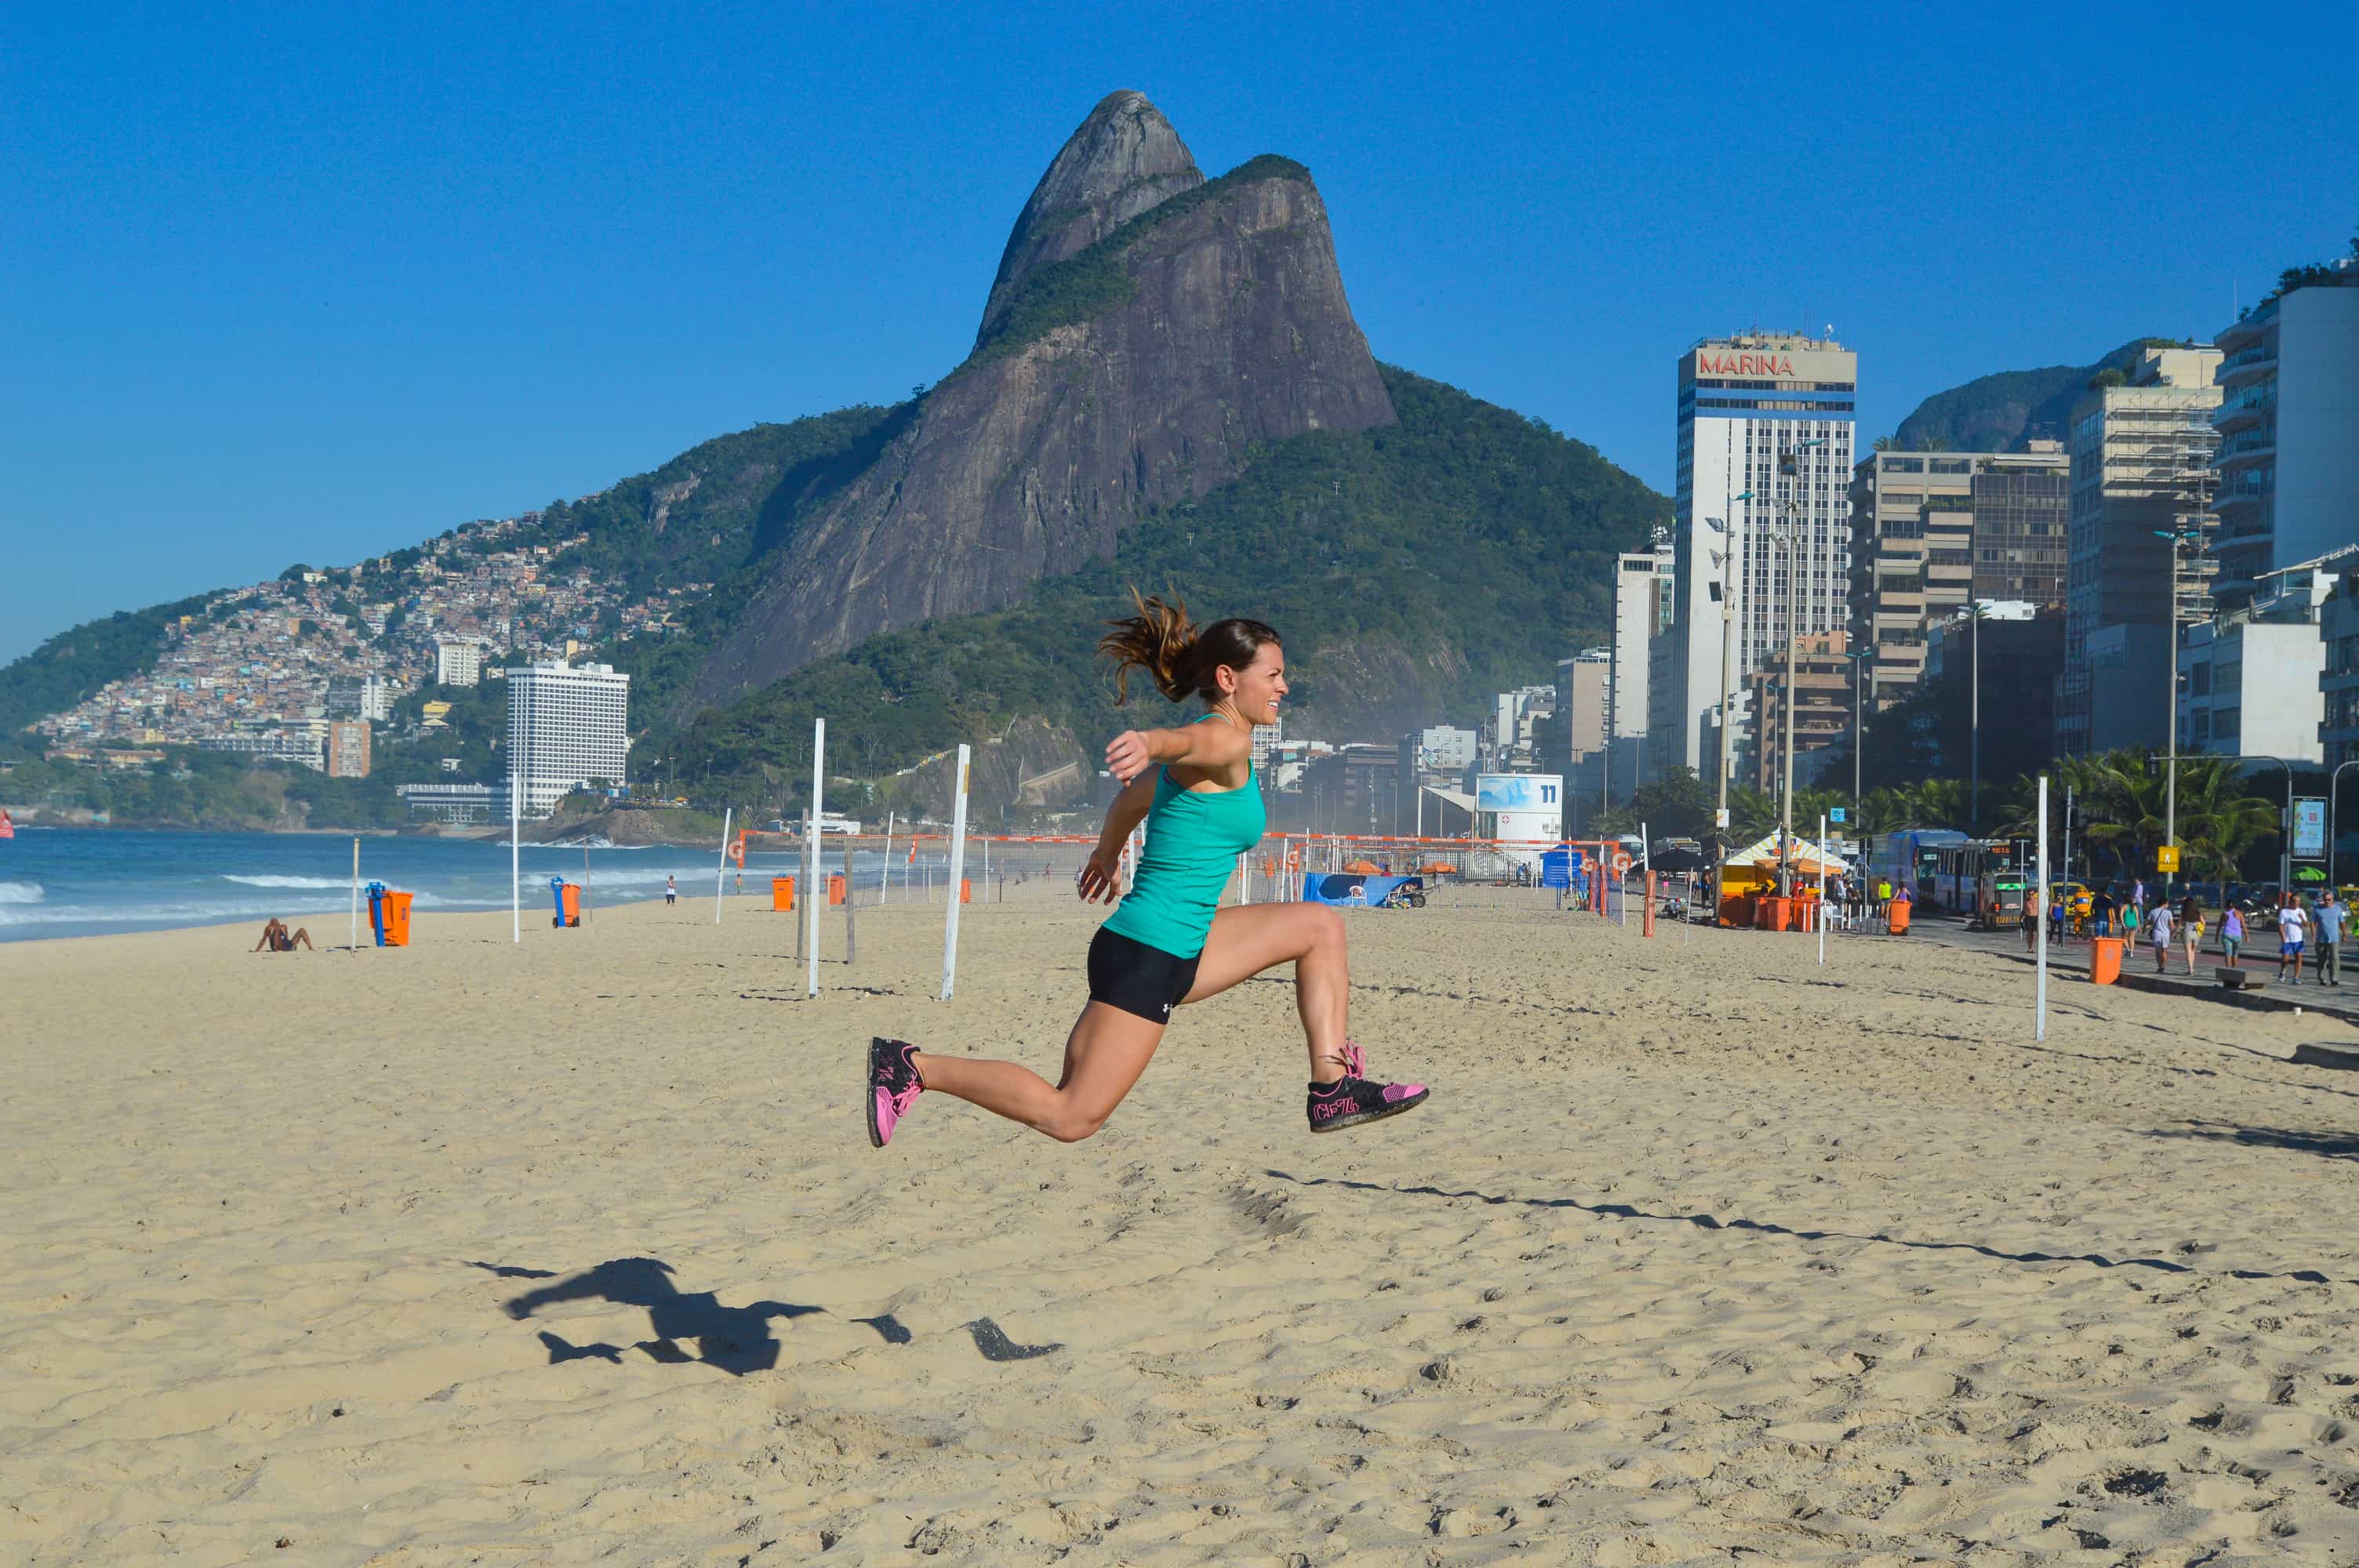 brazilian butt lift workout video on beach